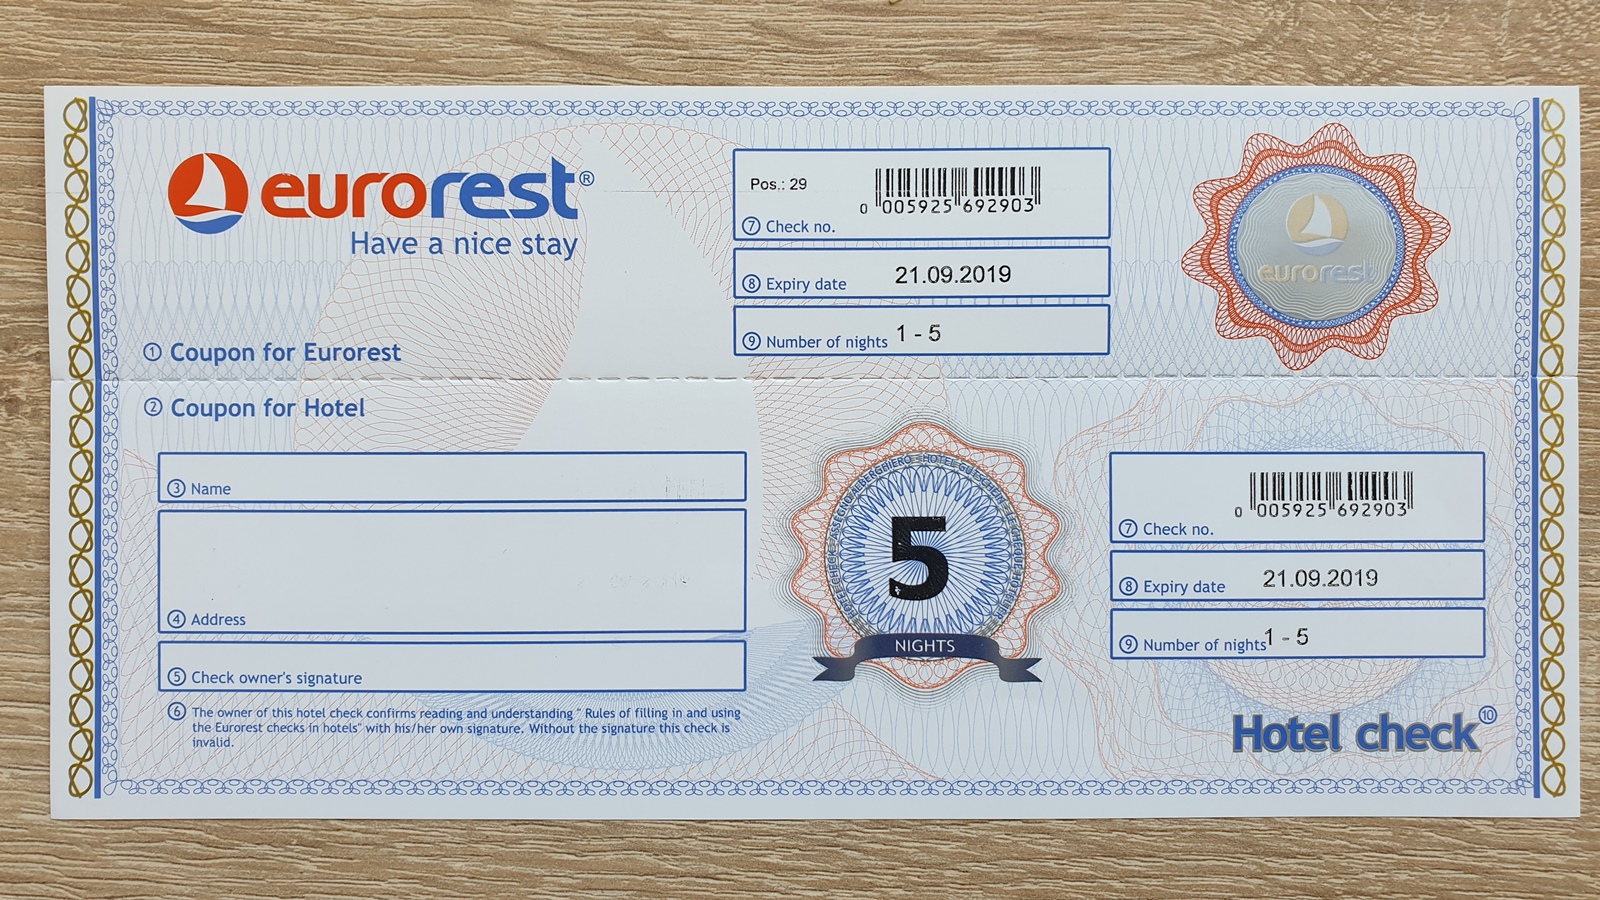 Recenzie: Je voucher Eurorest scam, alebo výhodná ponuka?